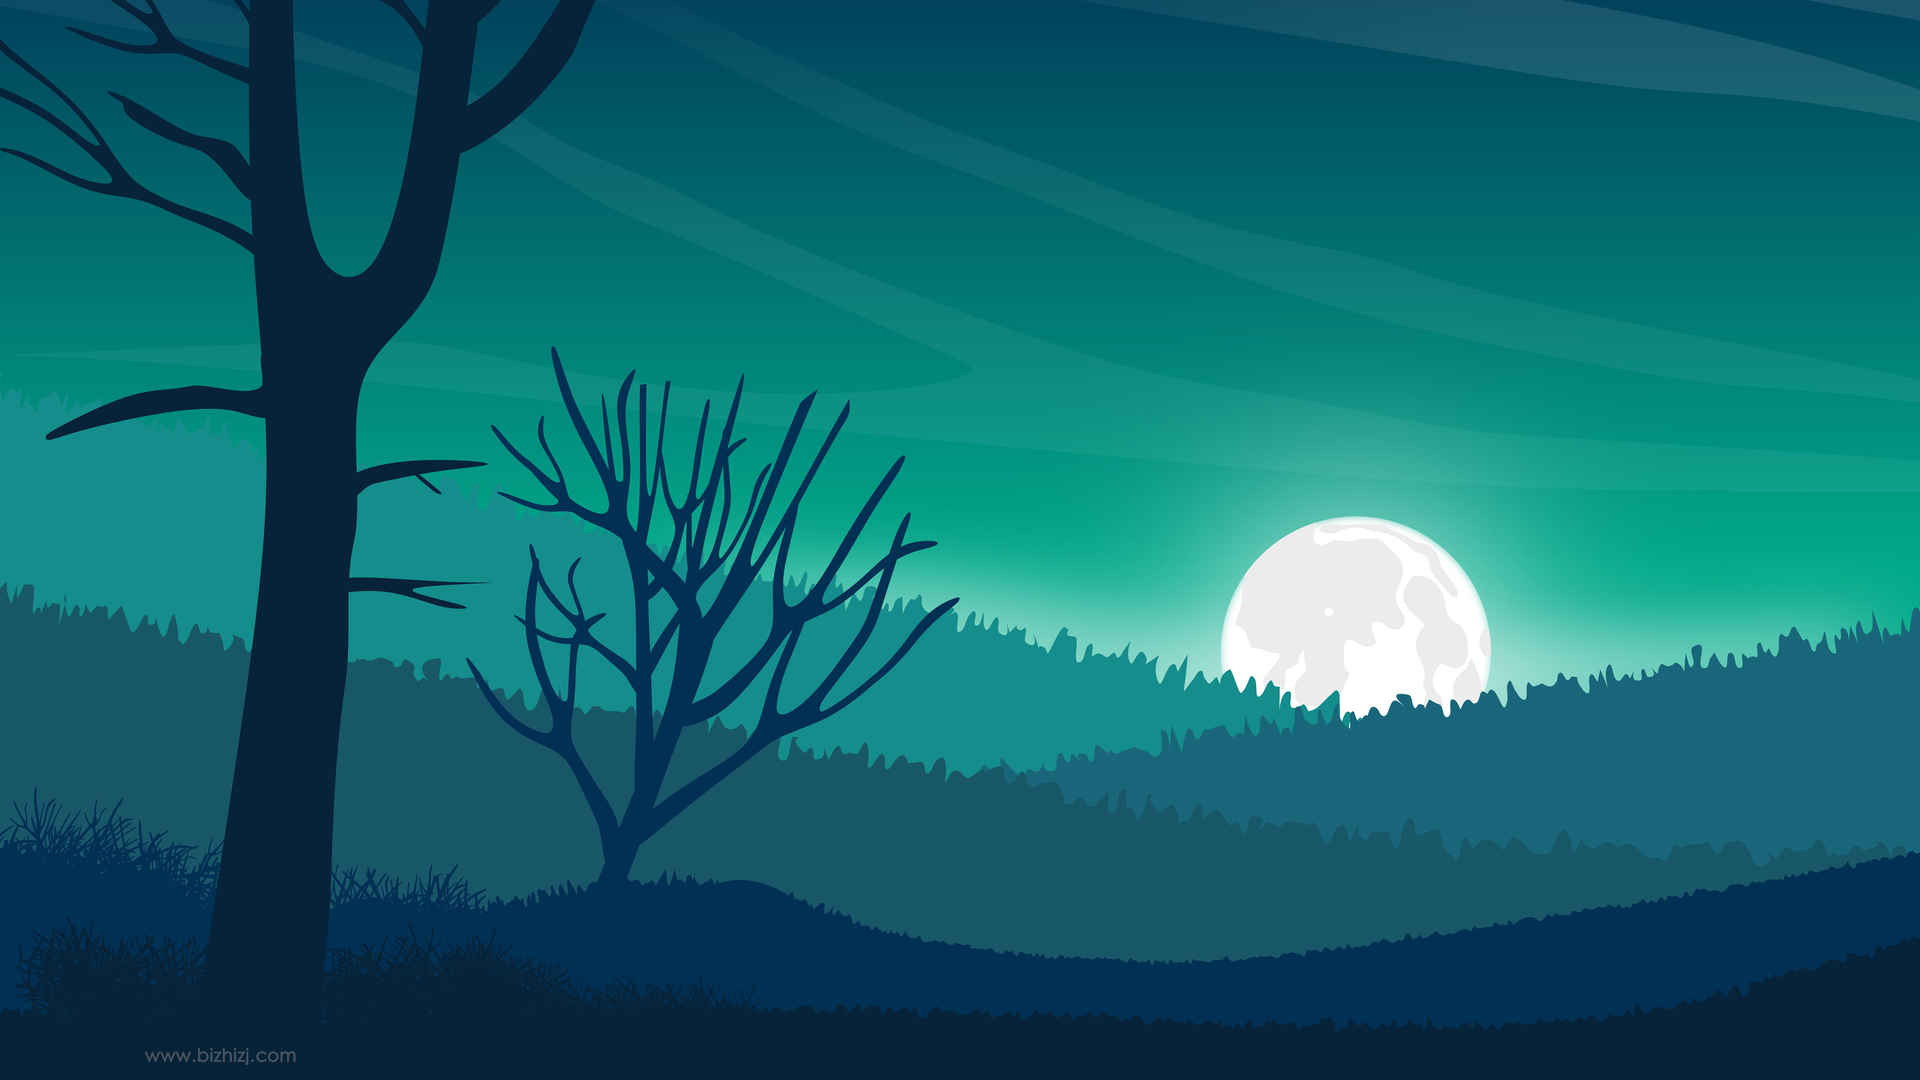 夜晚 树木 森林 月亮 风景插画壁纸